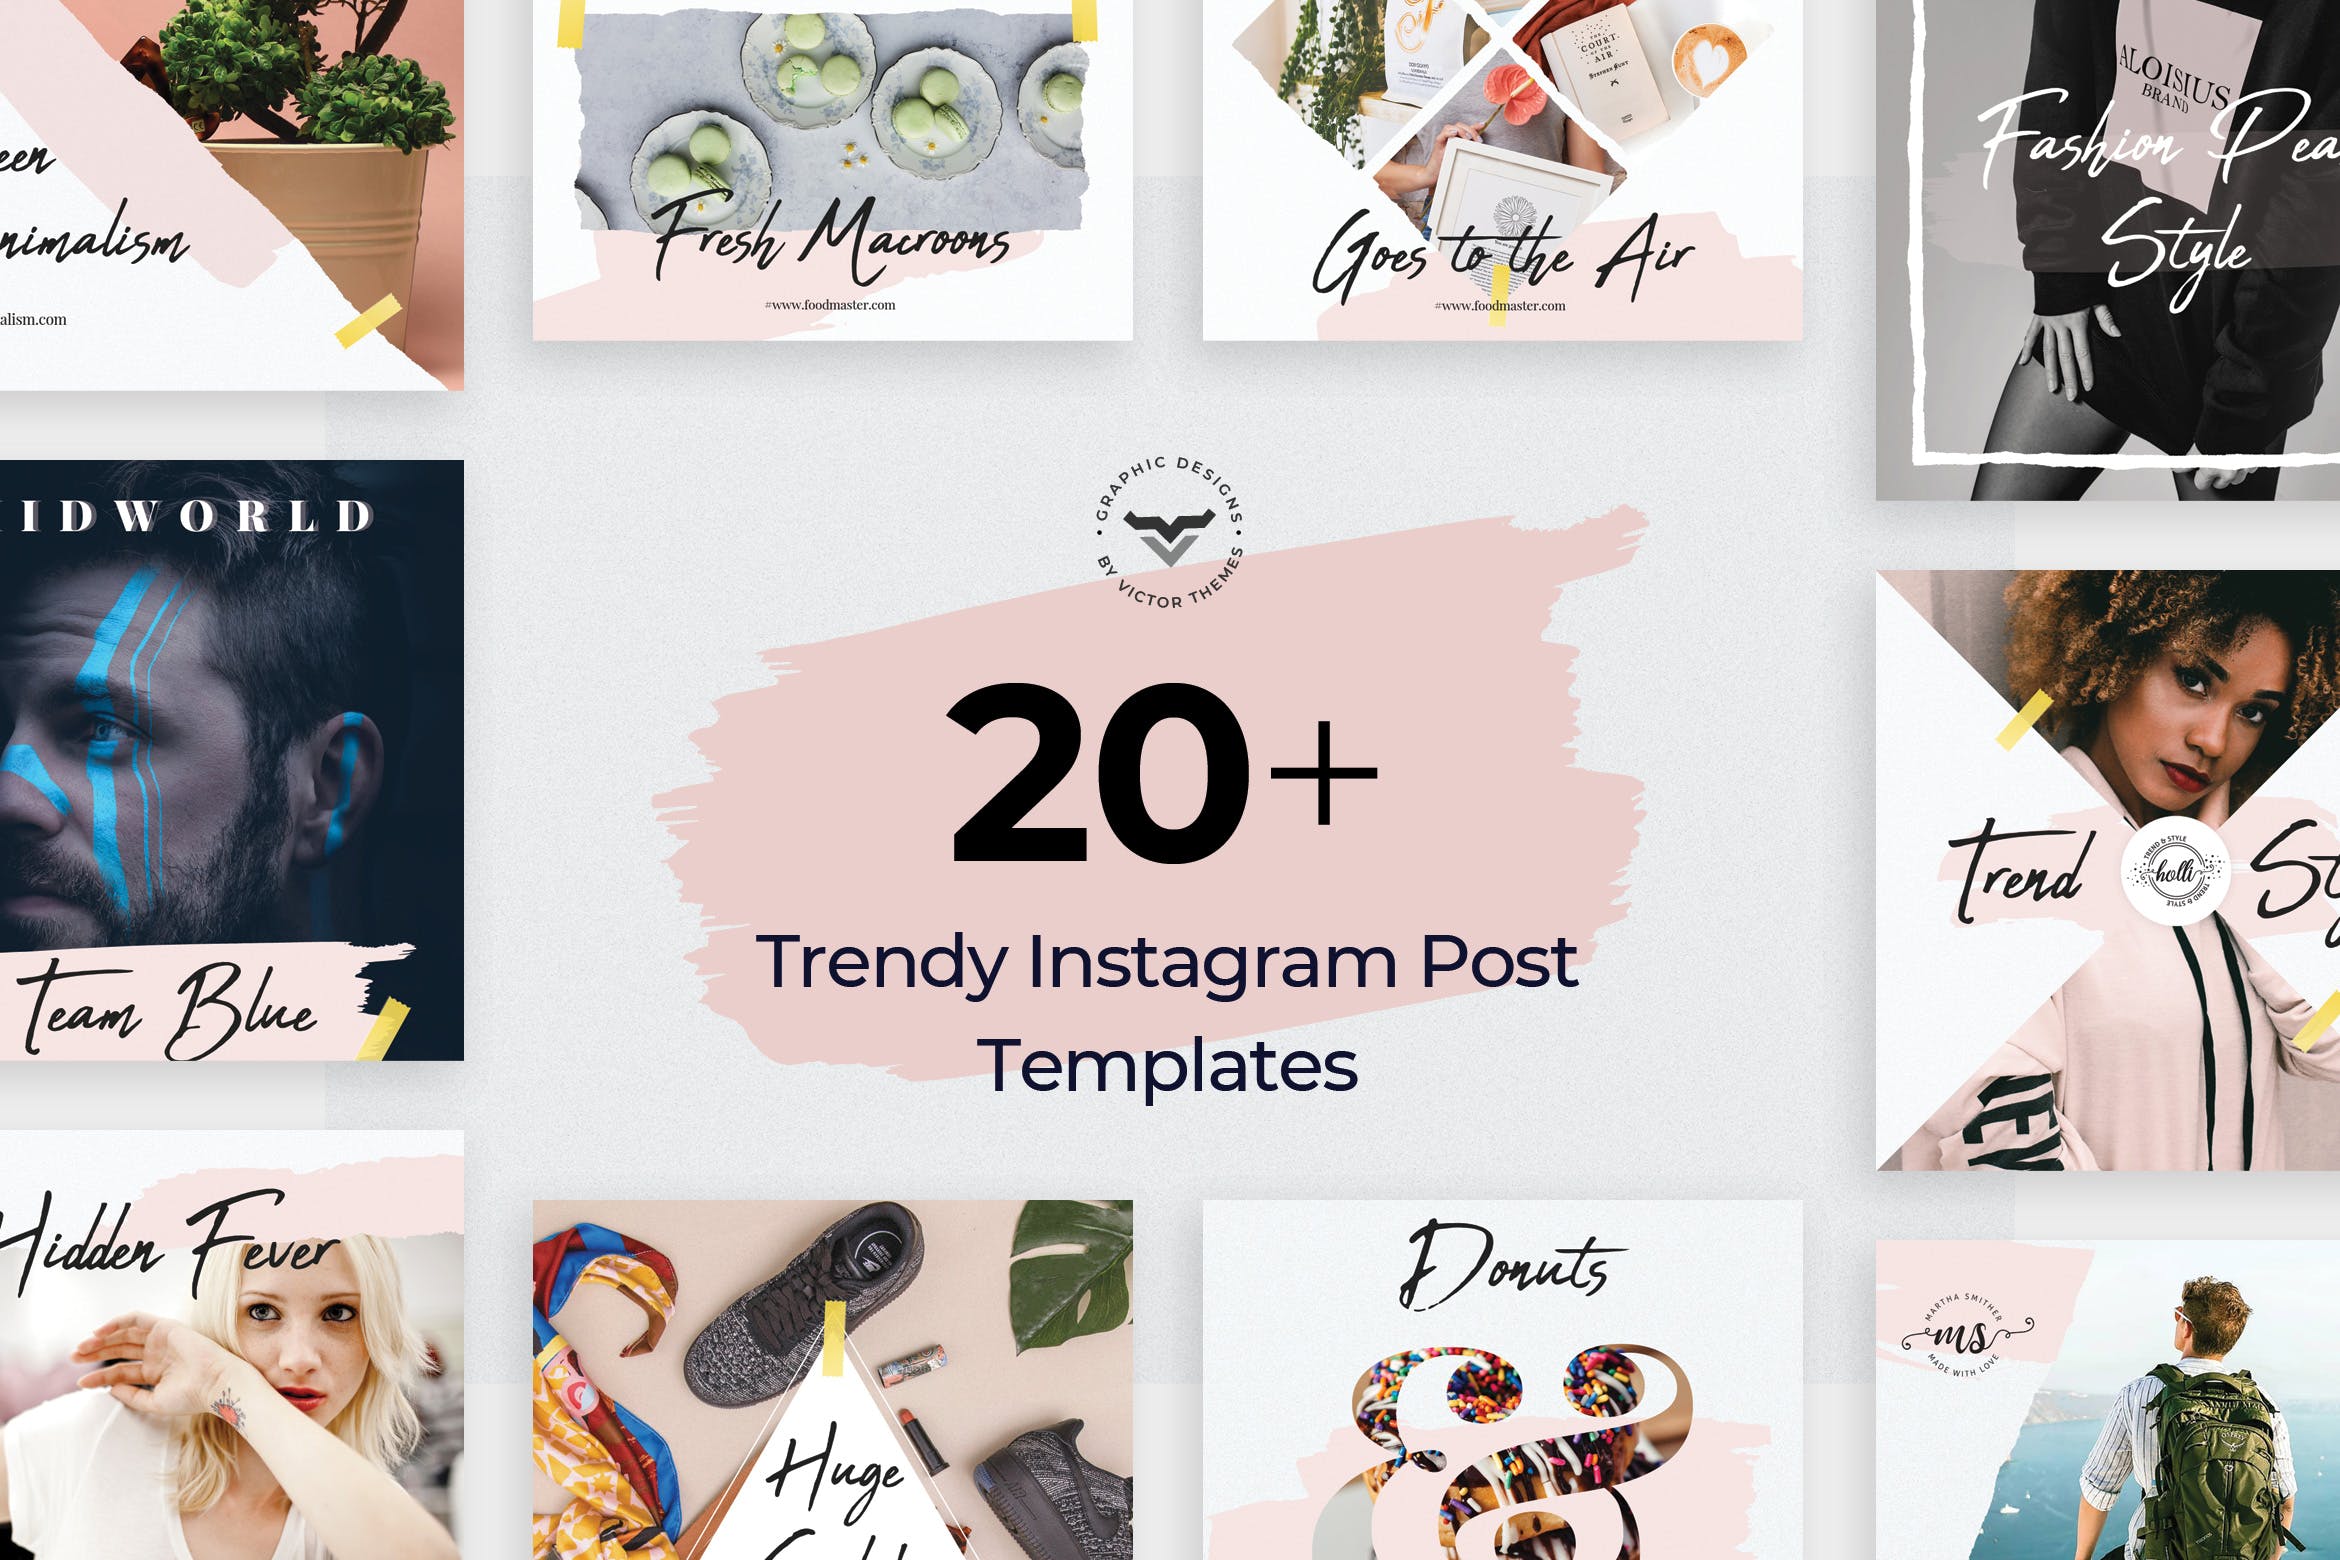 20+创意便利贴设计风格Instagram社交贴图模板普贤居精选 Instagram Post Templates插图